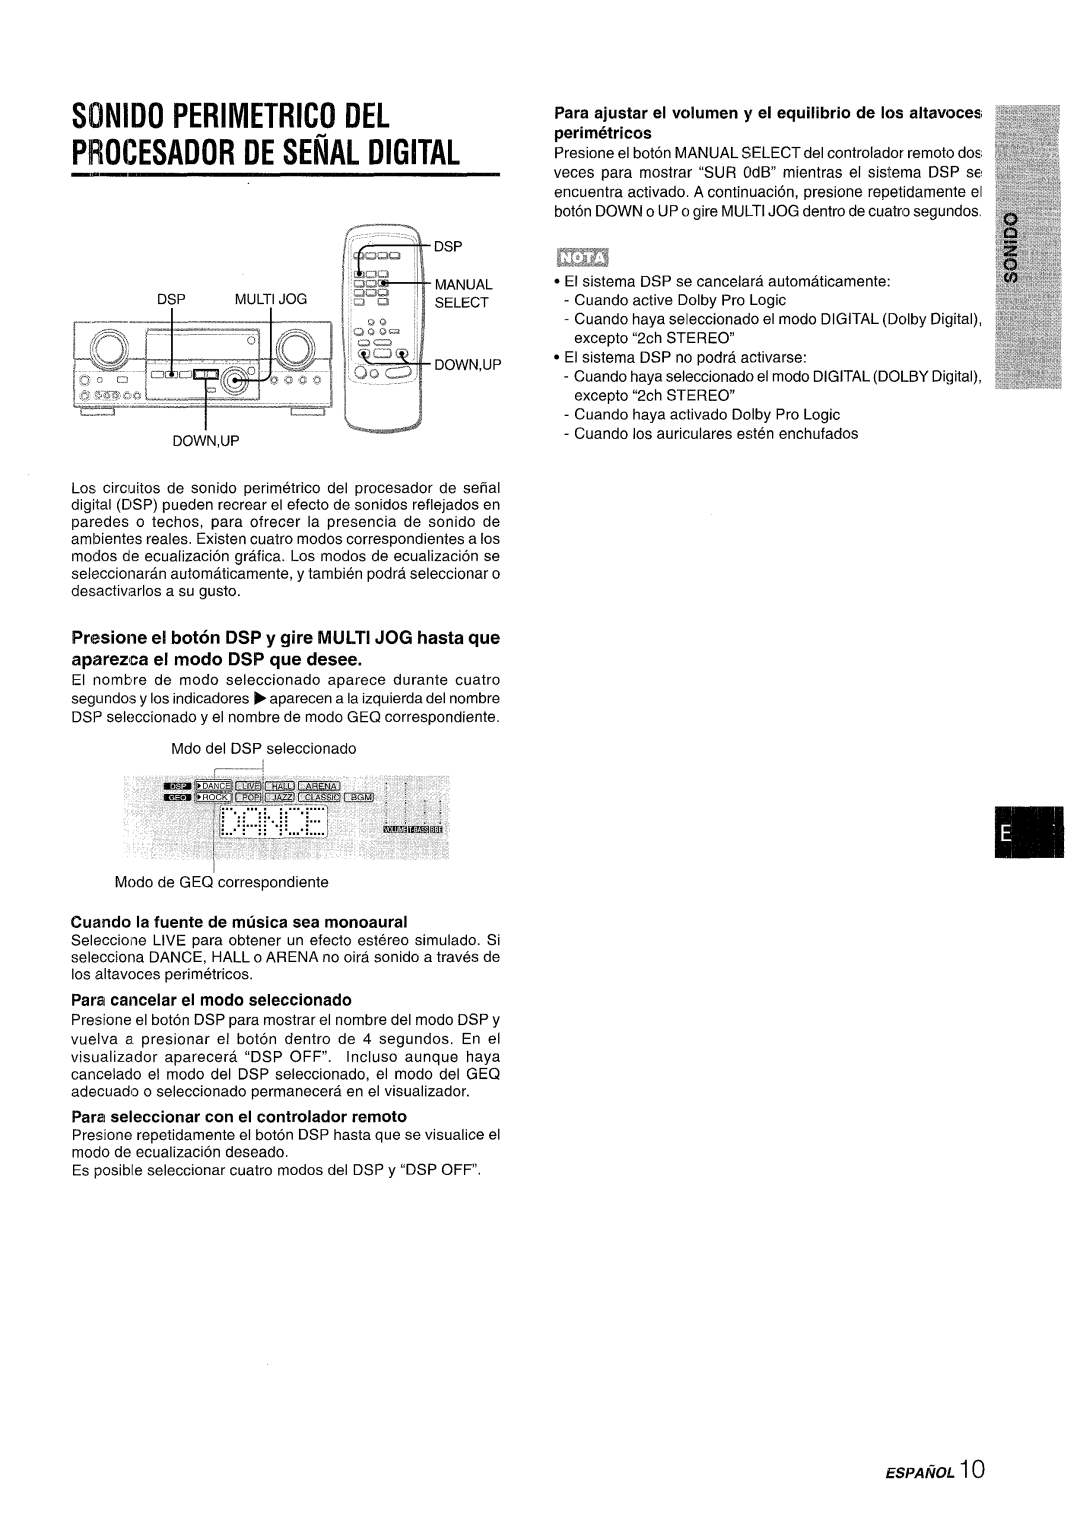 Sony AV-DV75 manual PROCESADOR DESEiiALDIGITAL, Sonido Perimetrico Del, Parm seleccionar con el controlador remoto 